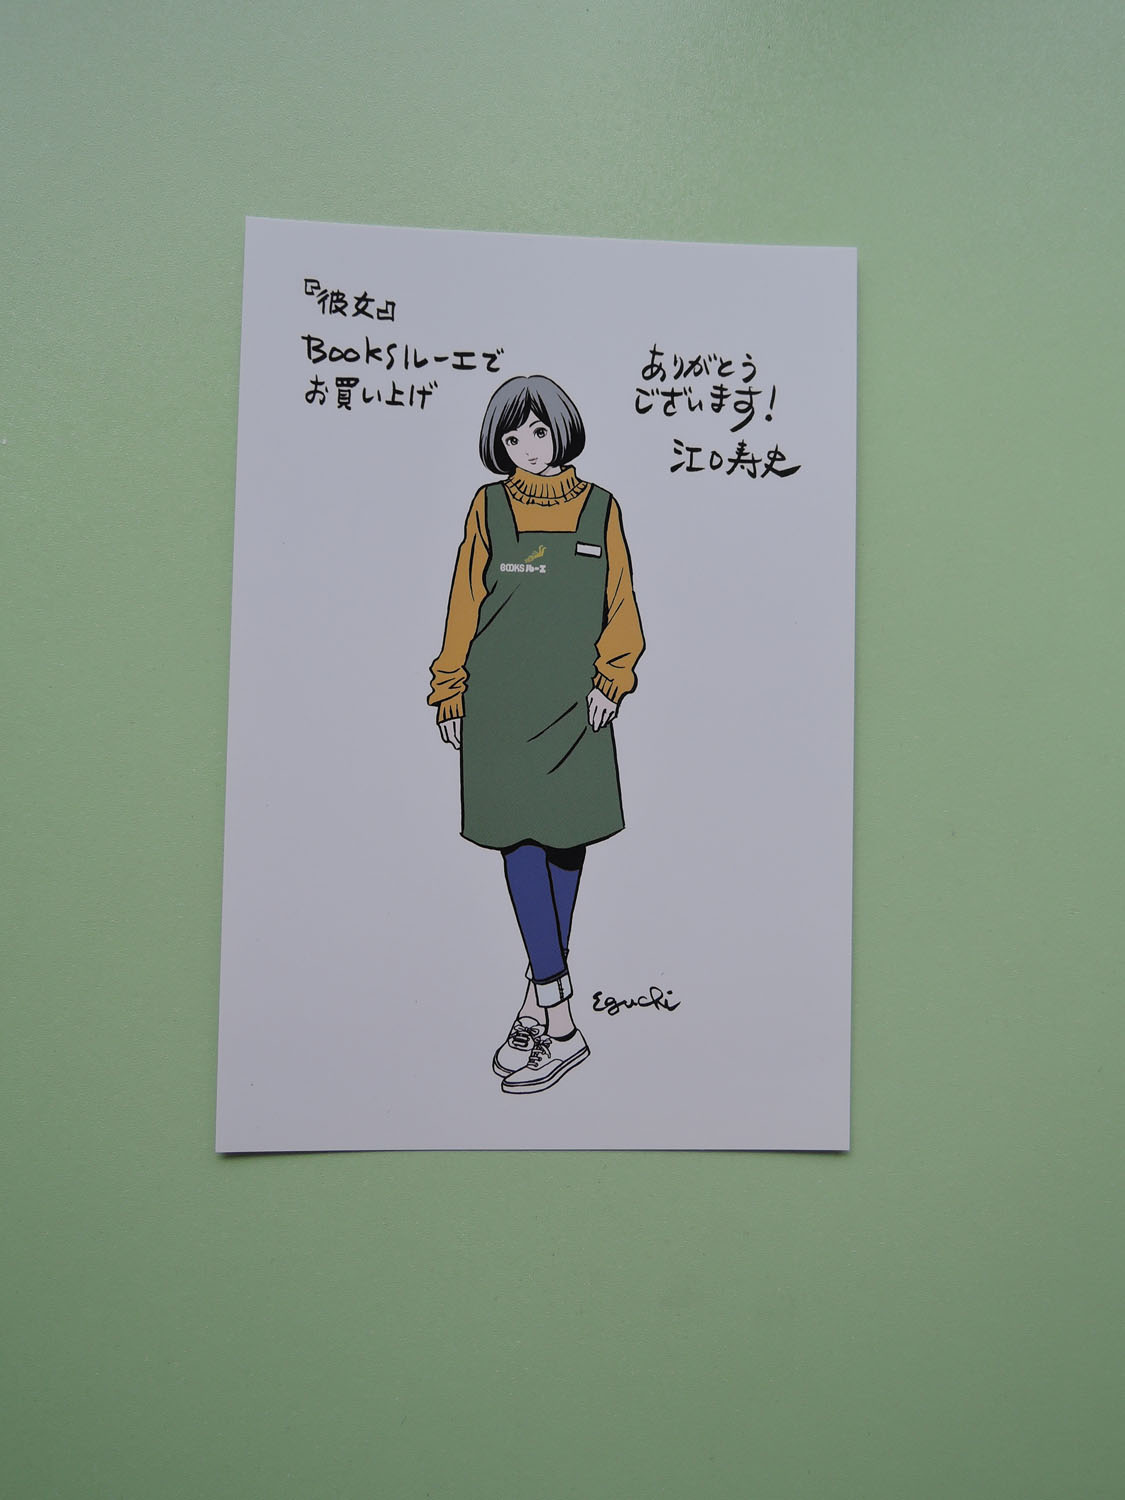 永井さんの娘さんがモデルになっているという。『BOOKSルーエ』にしかないポストカード。